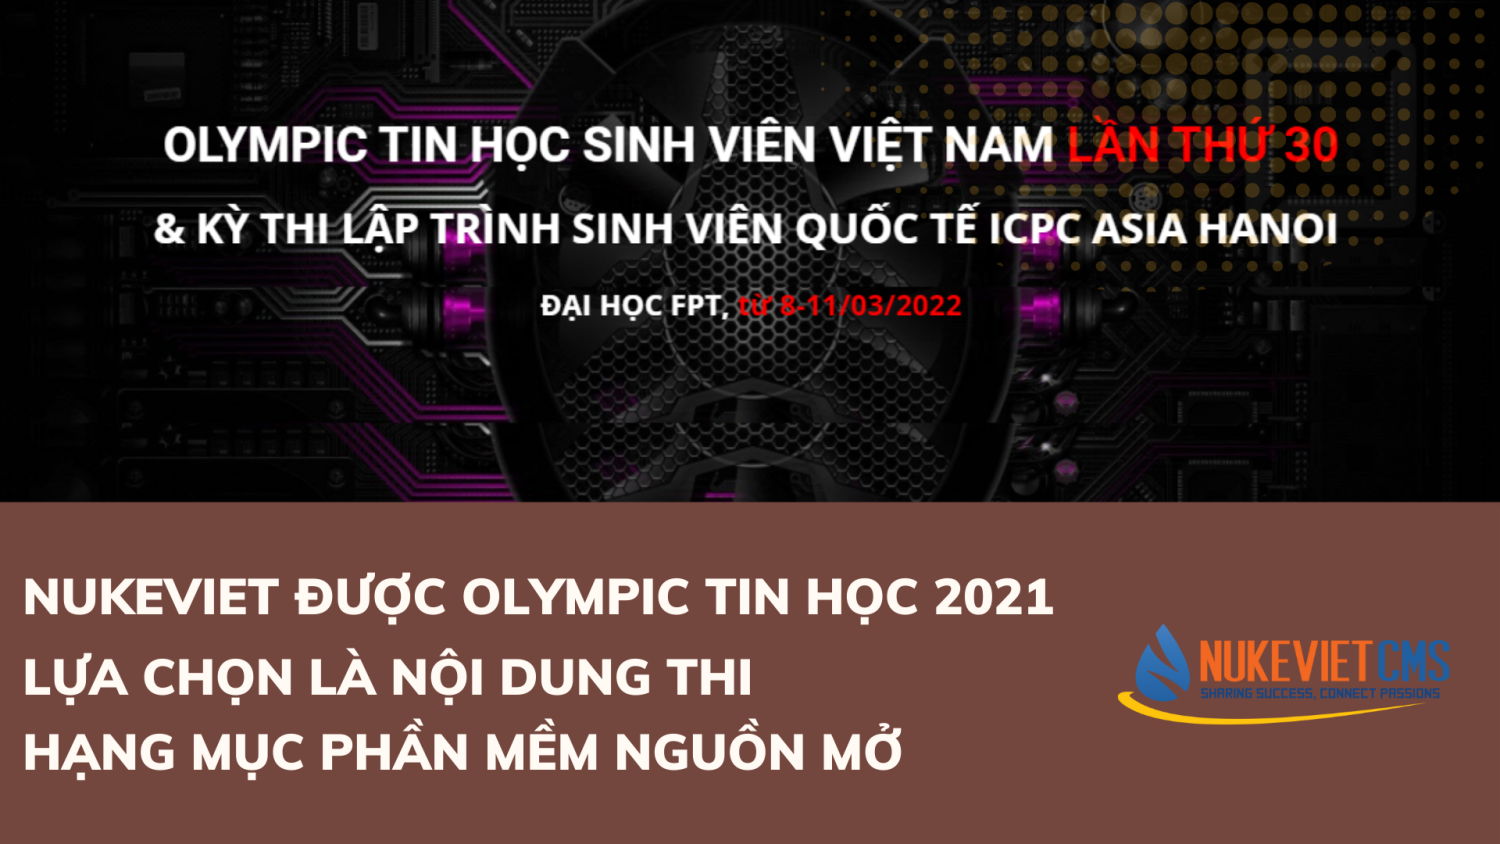 NukeViet tiếp tục được Olympic tin học 2021 lựa chọn là nội dung thi - Hạng mục Phần mềm nguồn mở